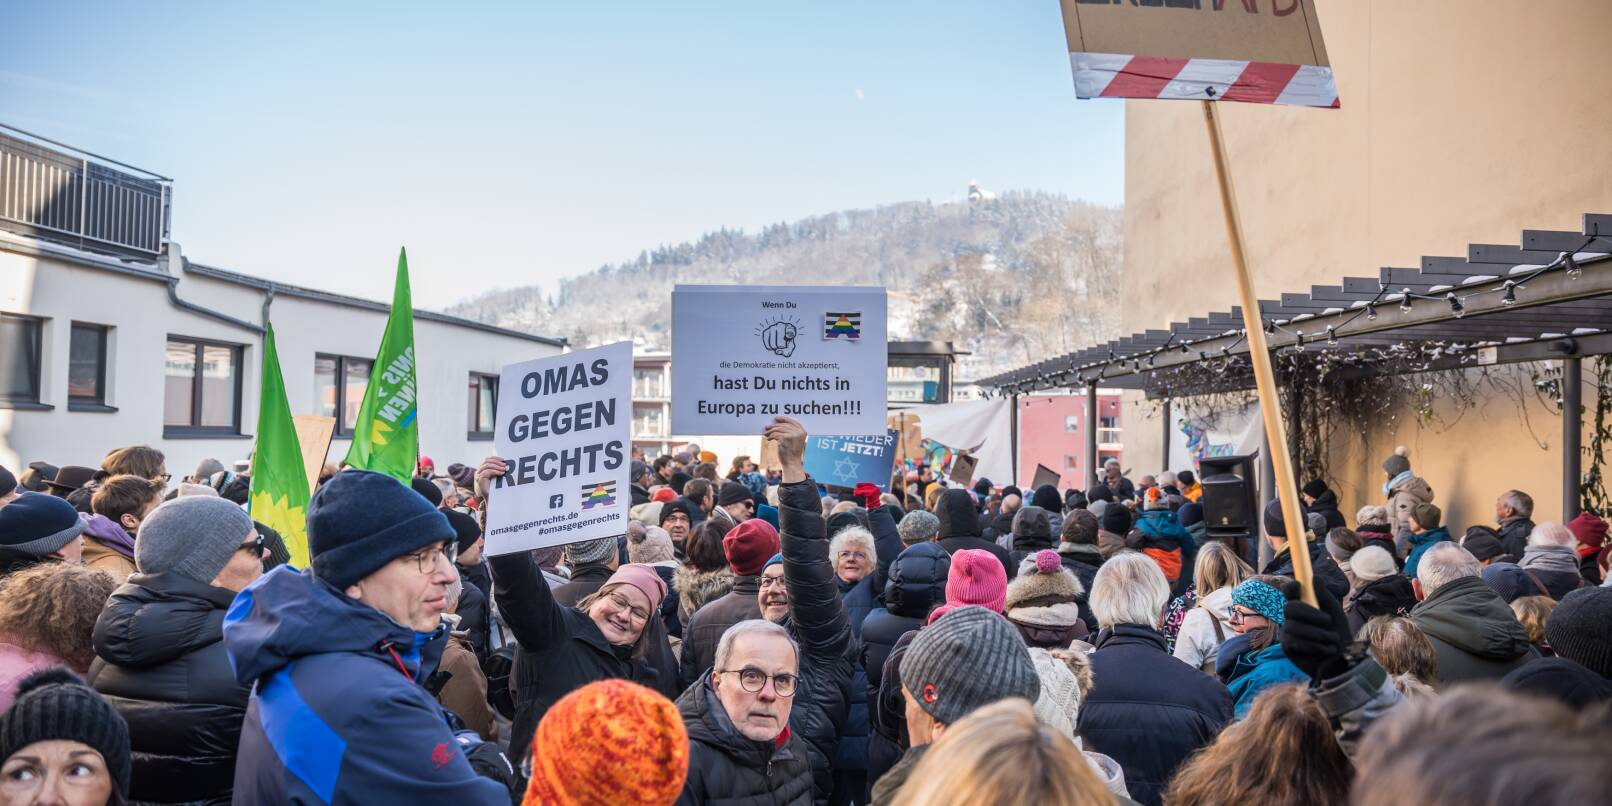 Die "Omas gegen rechts" sind mit von der Partie: Die Kundgebung in Weinheim fand auf dem Windeckplatz mitten in der Fußgängerzone statt.